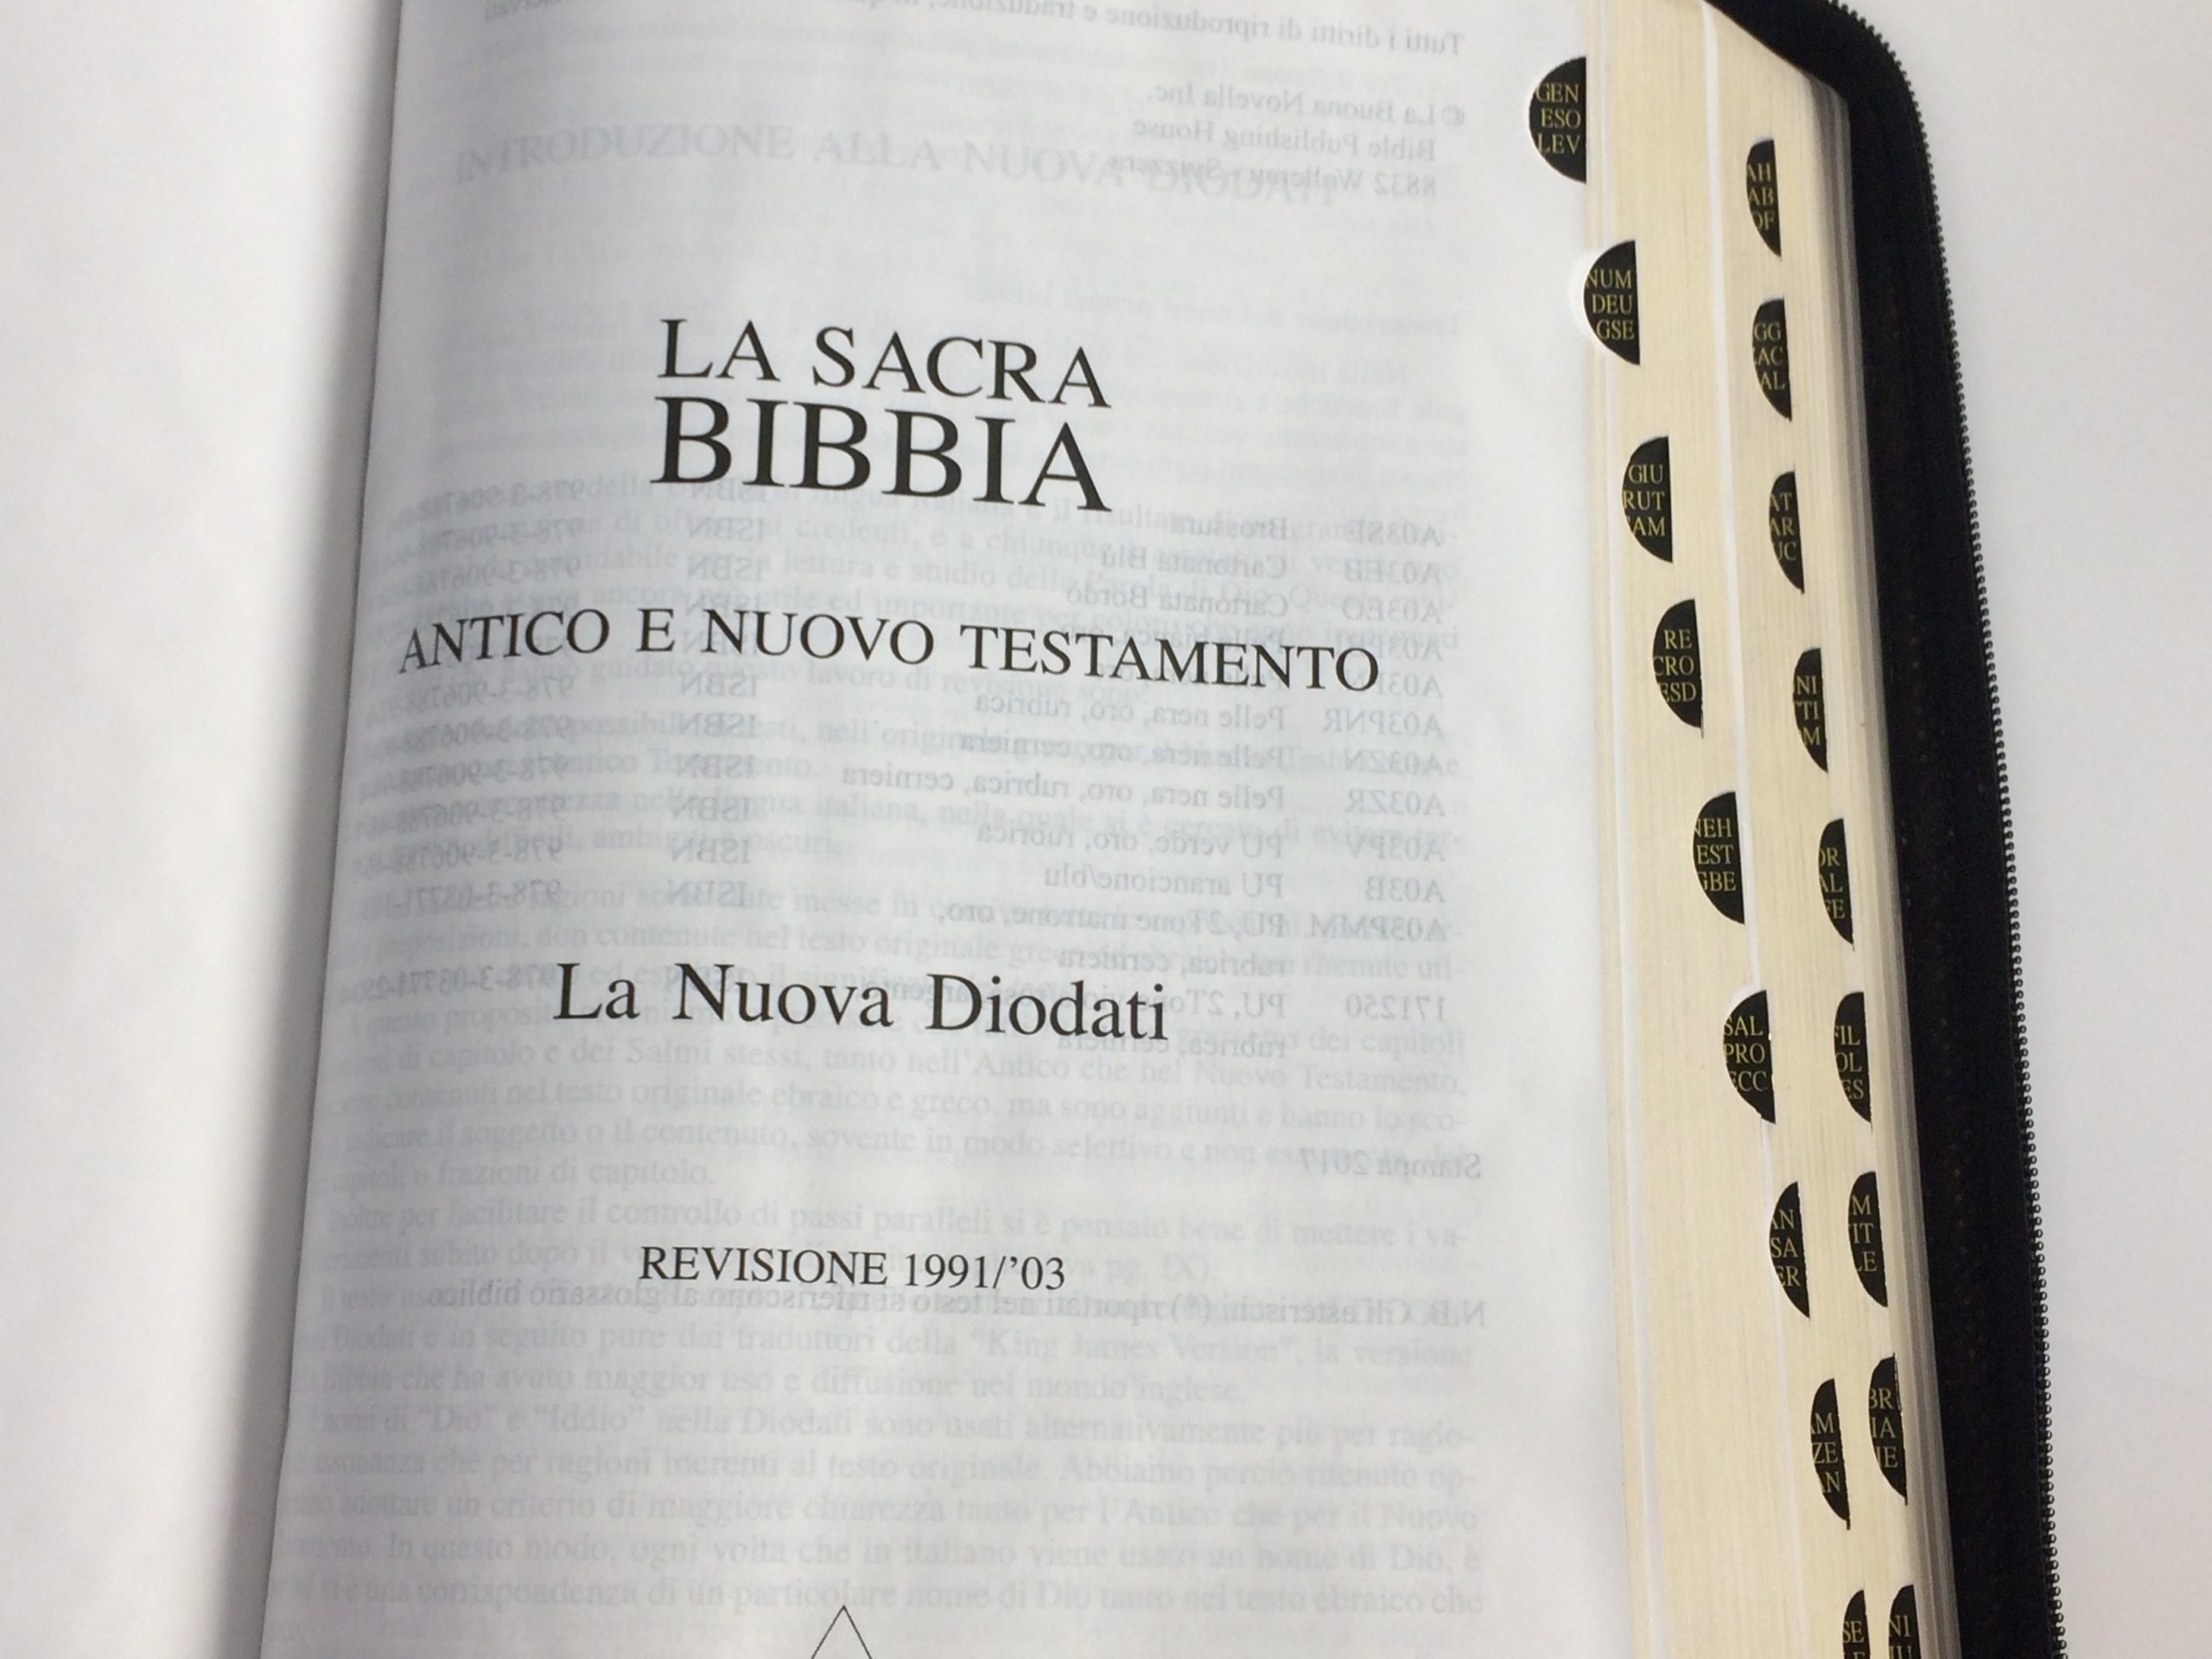 Bibbia Nuova Diodati - A03V - Formato medio: In pelle Viola/Rosa:  www.